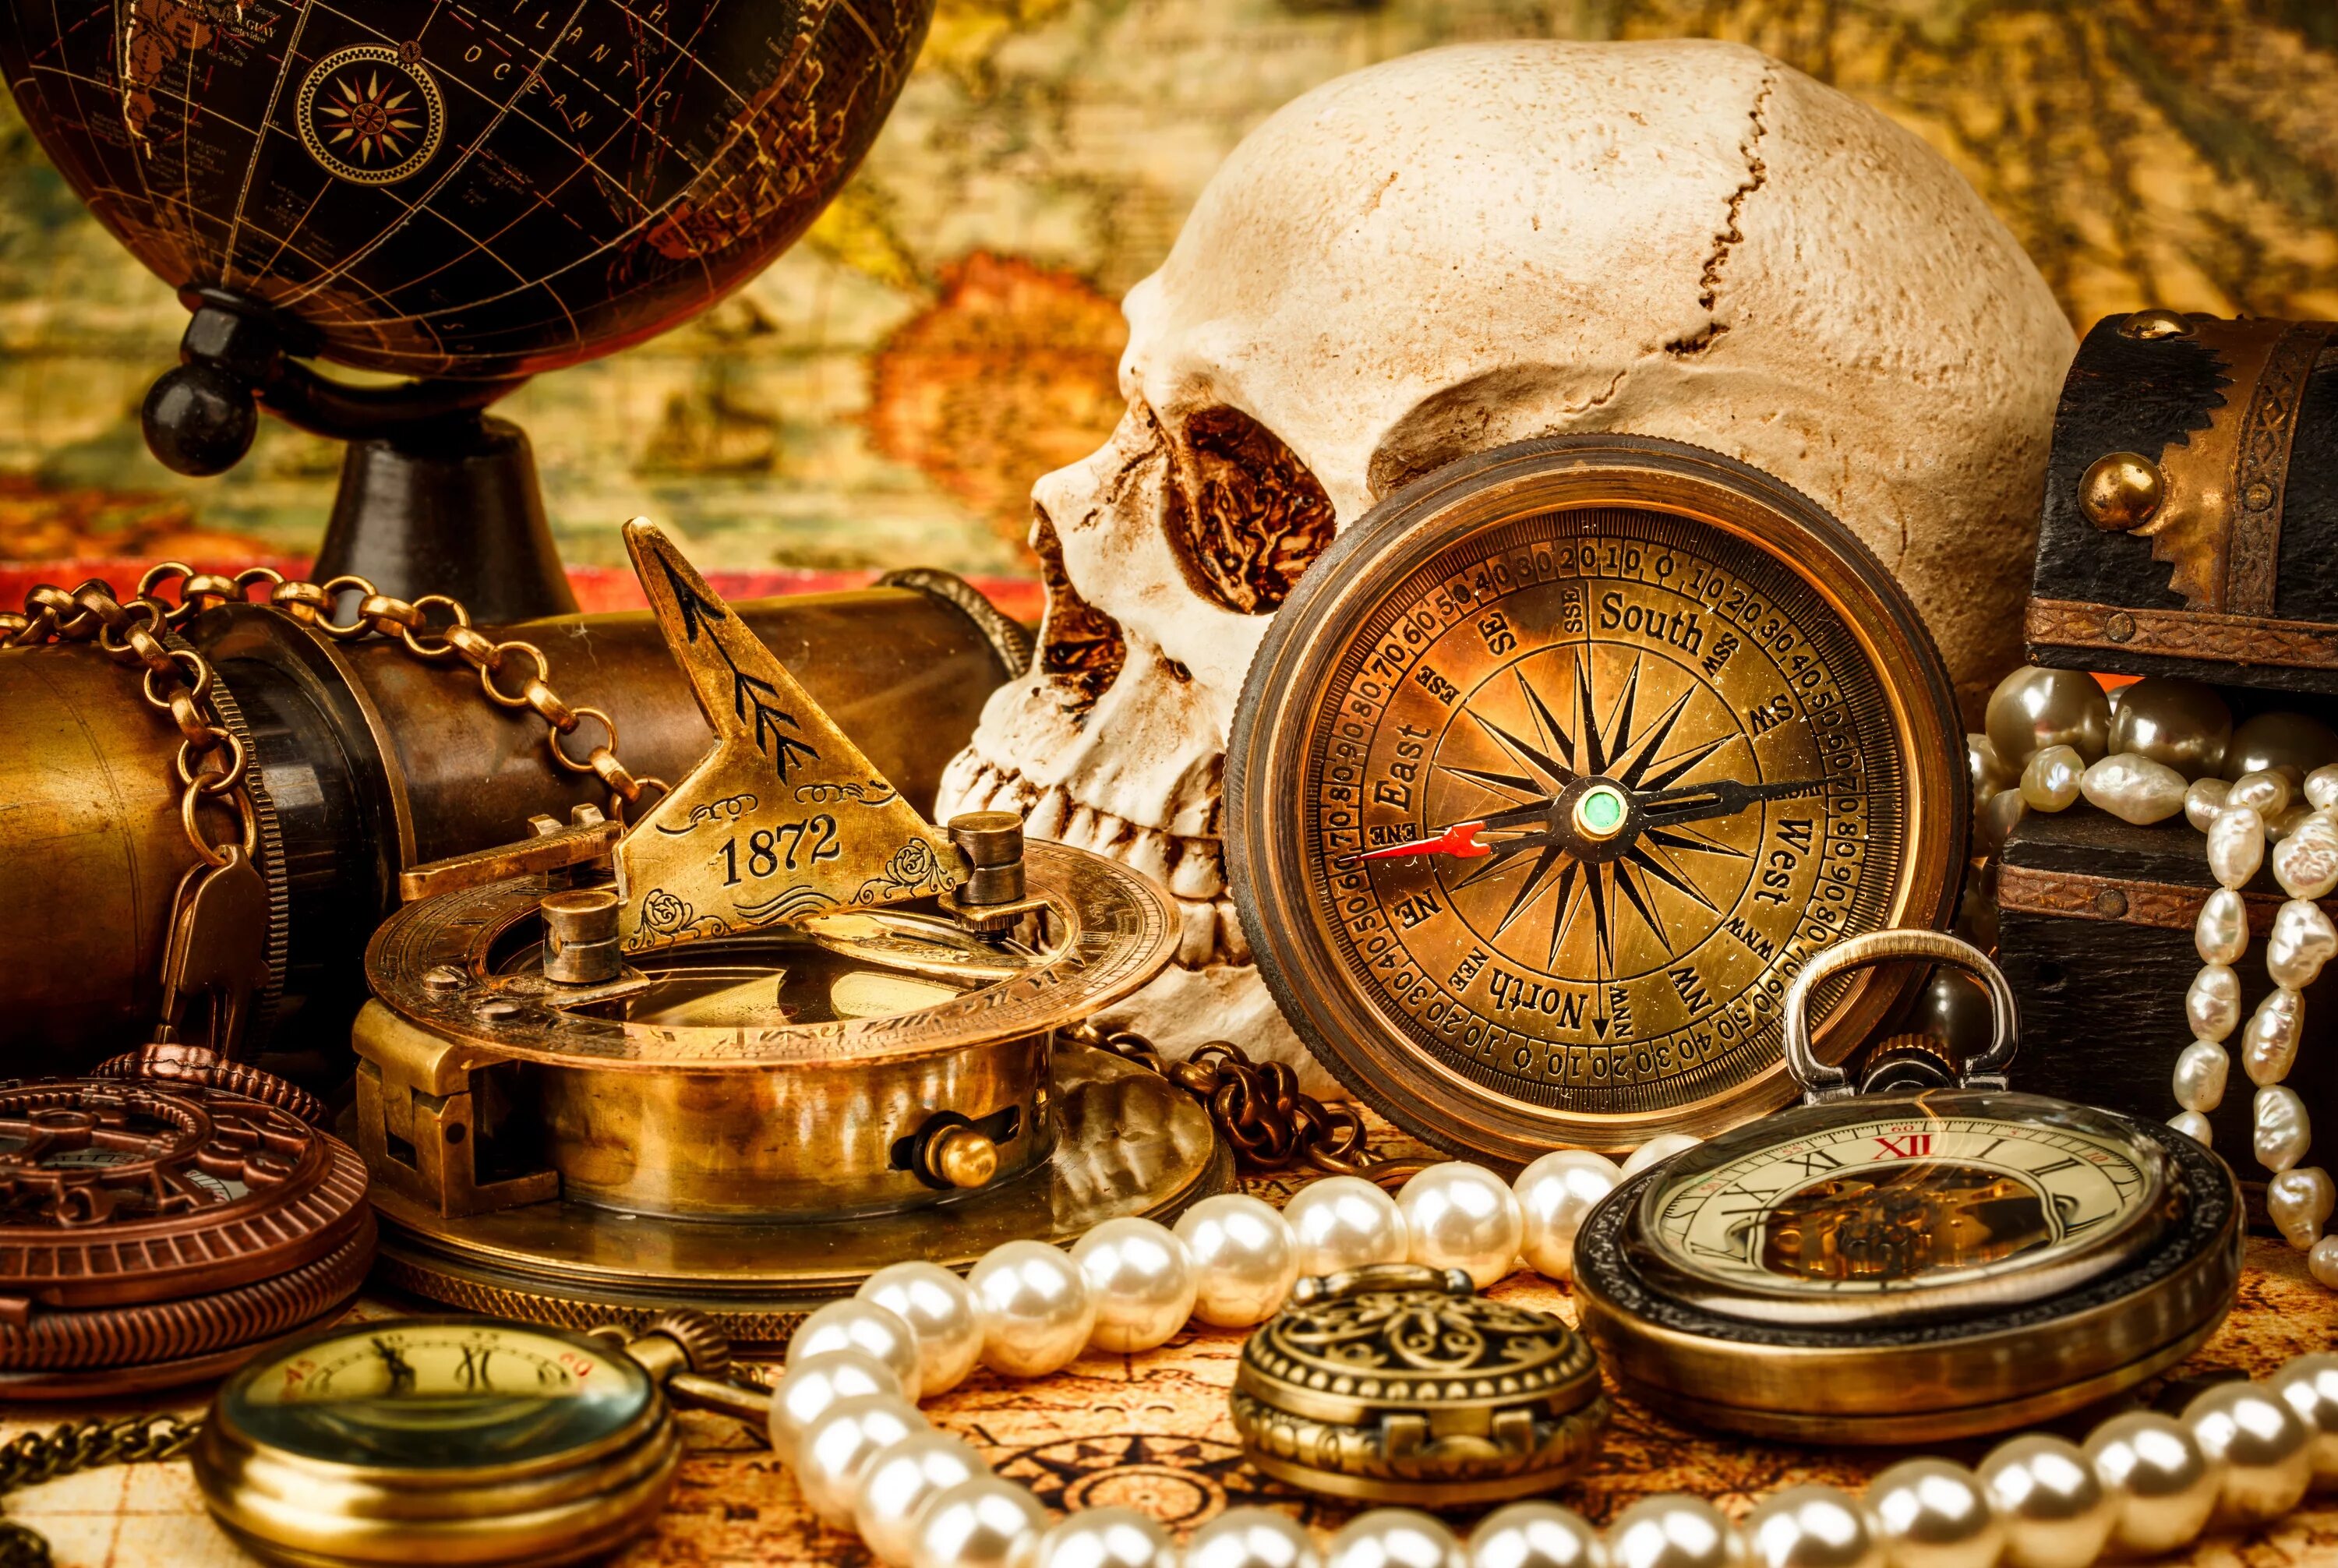 Старинный компас. Пиратские сокровища. Натюрморт с часами. Натюрморт с компасом. Сокровища саундтрек